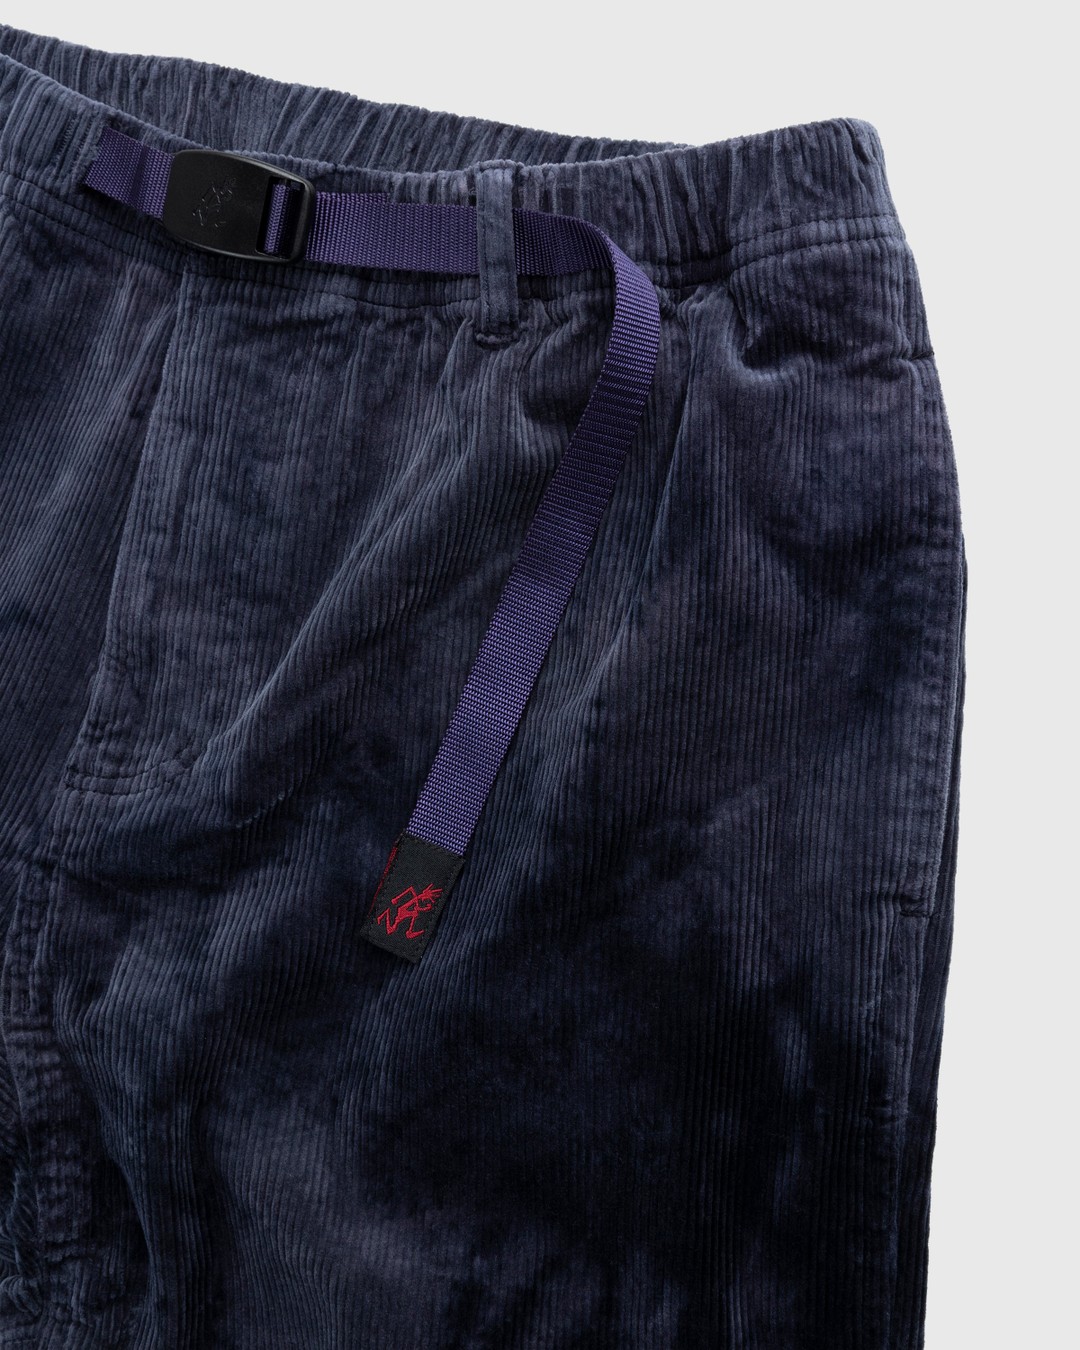 Gramicci – Corduroy Gramicci Pant Bleach Dye - Trousers - Multi - Image 3